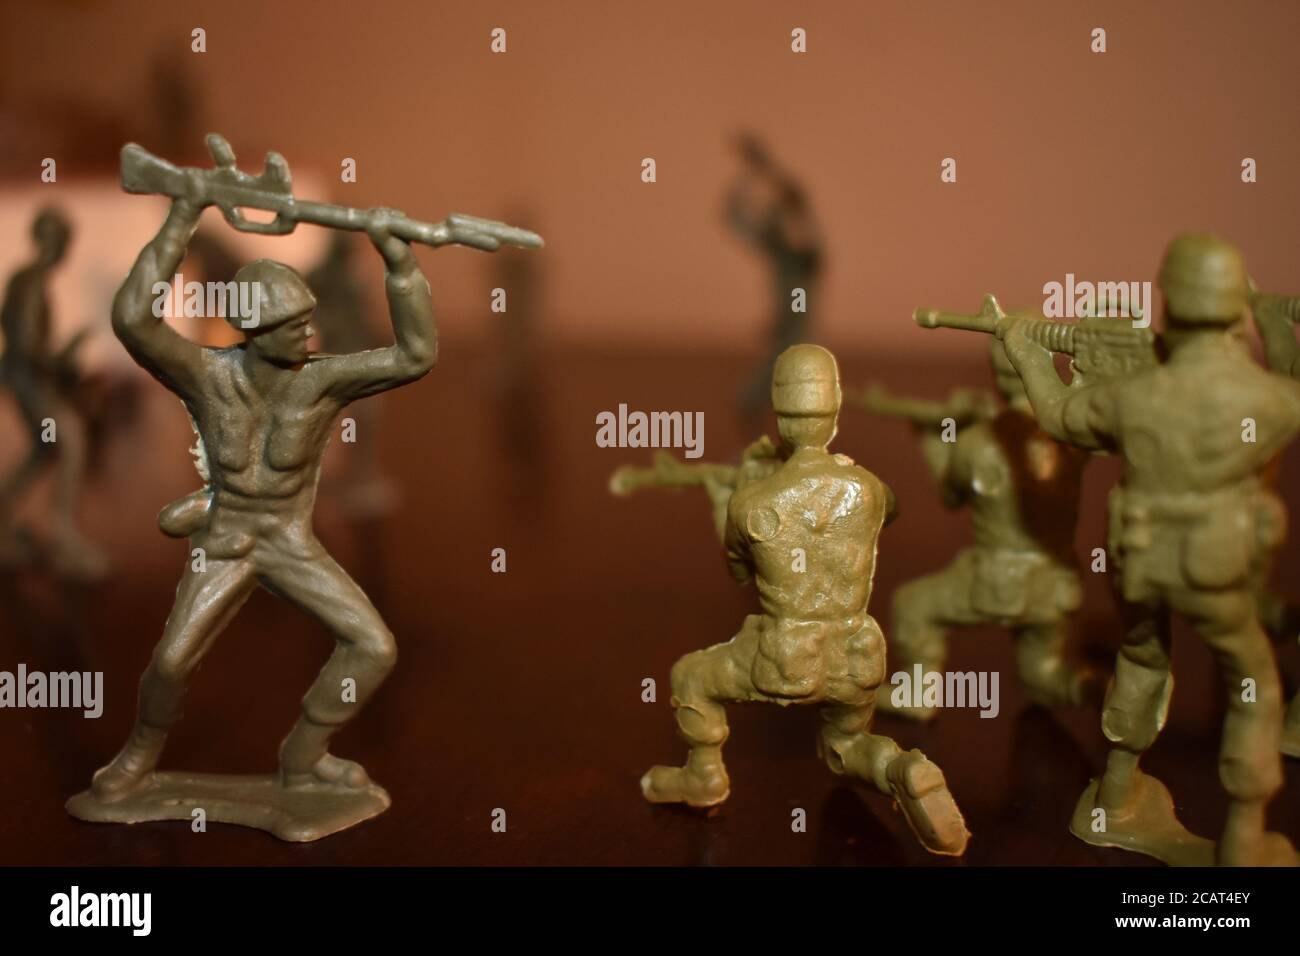 Un soldat de jouet charge un groupe d'autres soldats de jouet Sur une surface en bois Banque D'Images